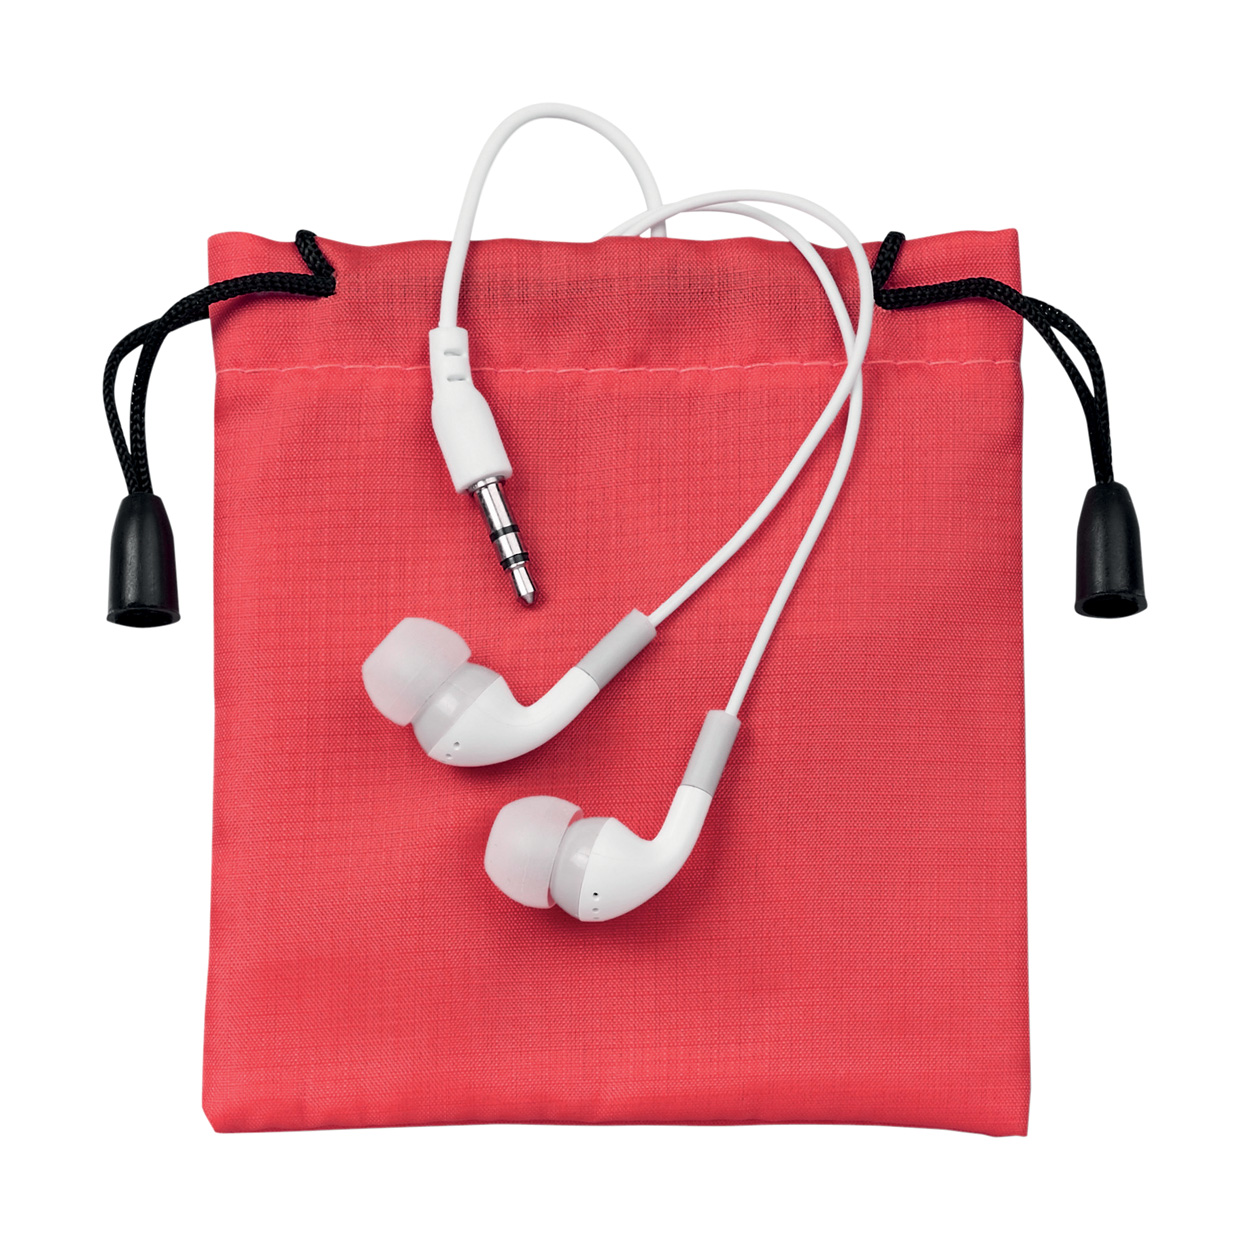 Cimex plastične slušalice u vrećici od poliestera, bijele boje s logom tvrtke 